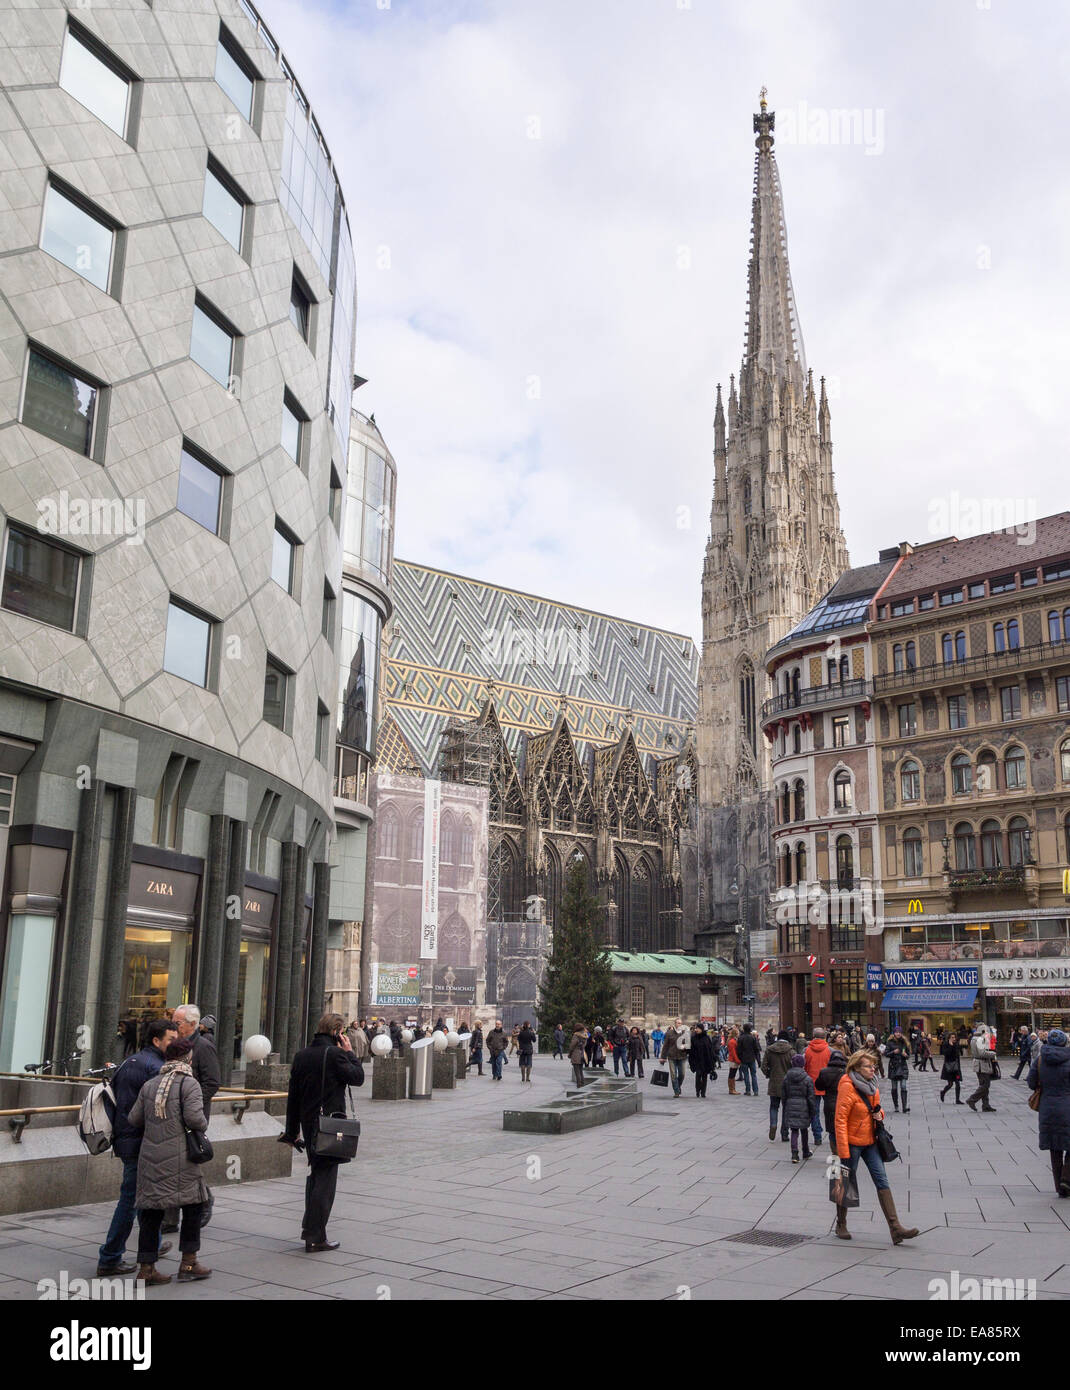 La place Stephansplatz et de la cathédrale, tour sud. La place en face de la grande cathédrale, bien peuplée avec les consommateurs Banque D'Images